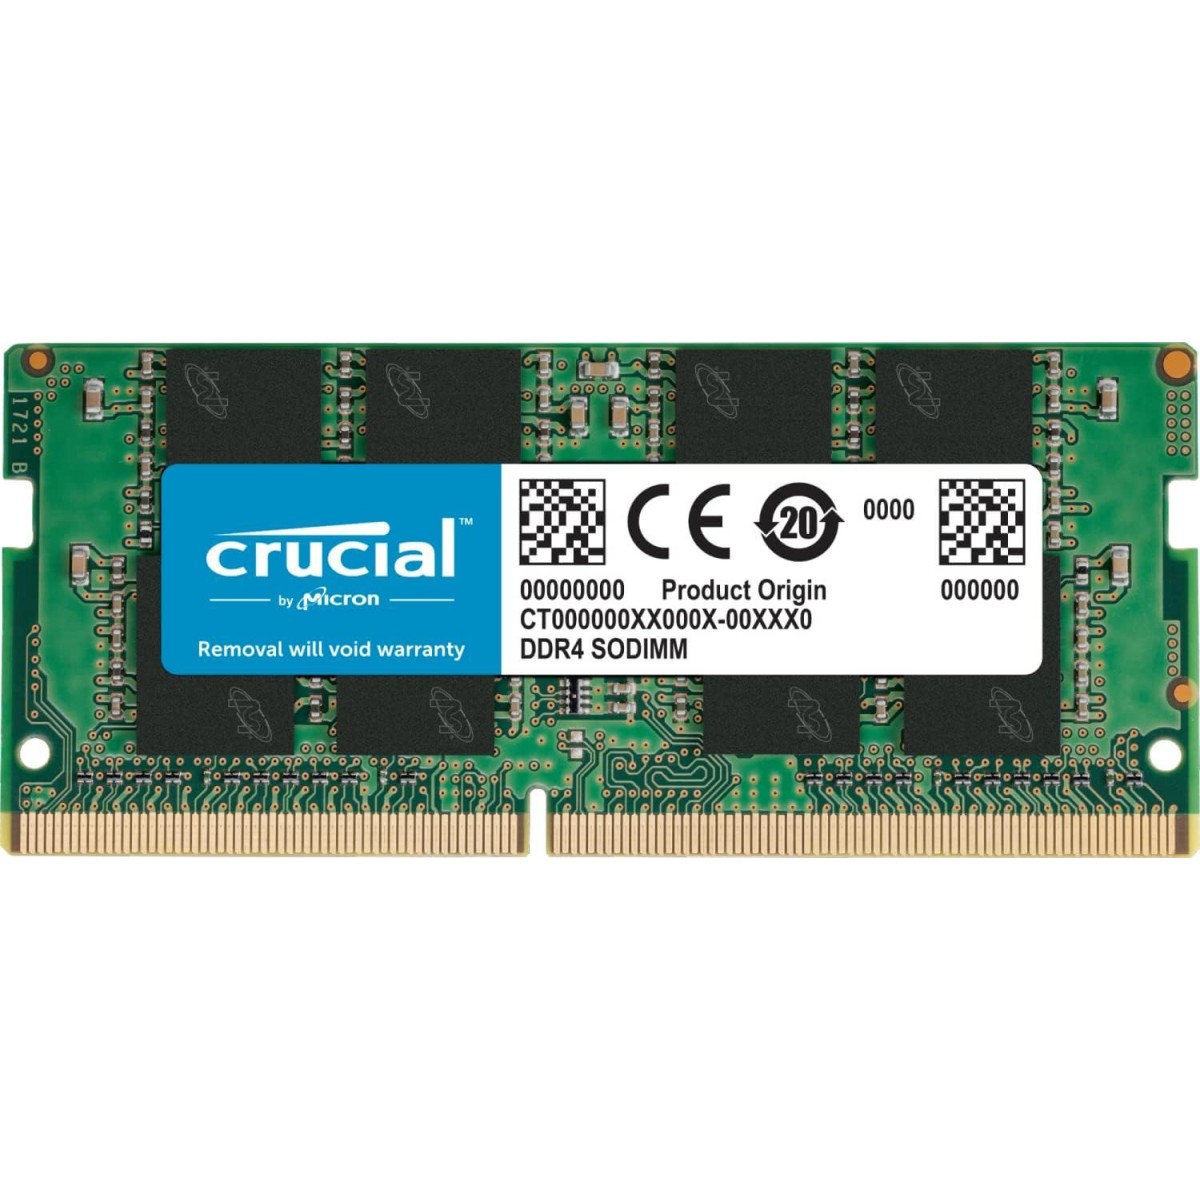 RAM Crucial CT16G4SFRA32A De 16gb